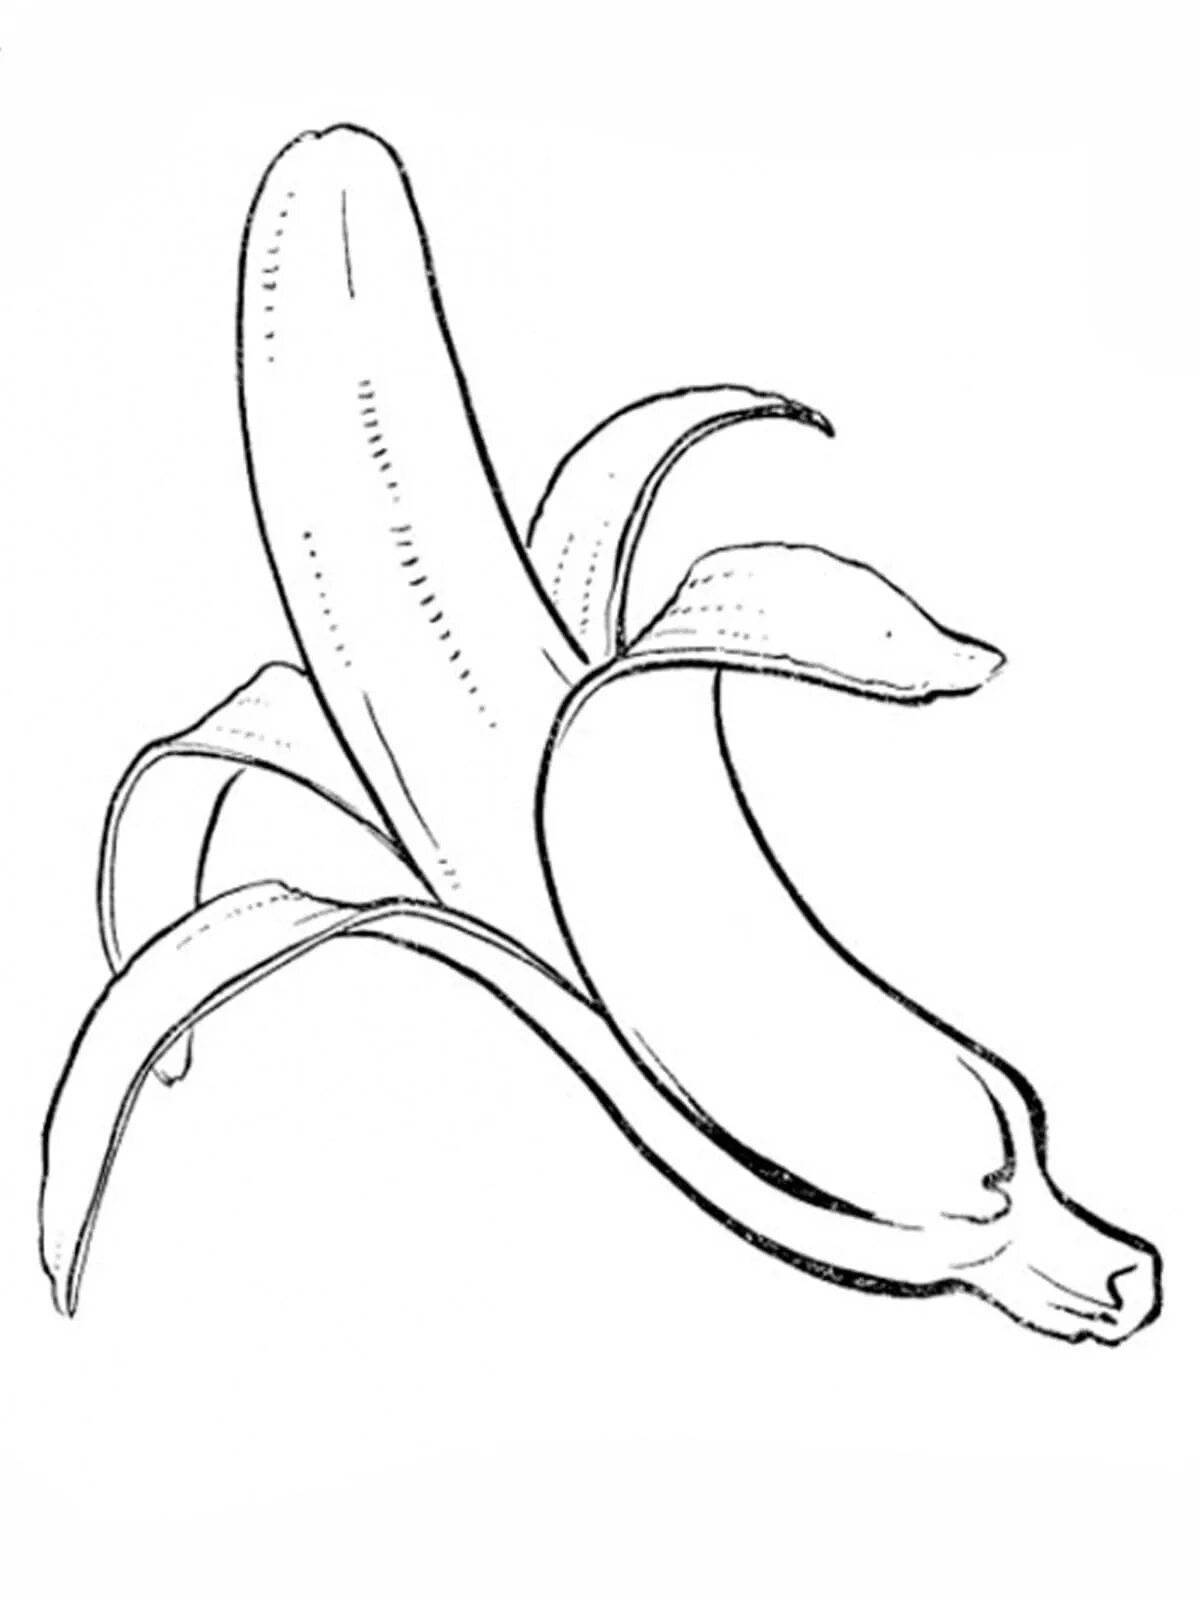 Художественный рисунок банана